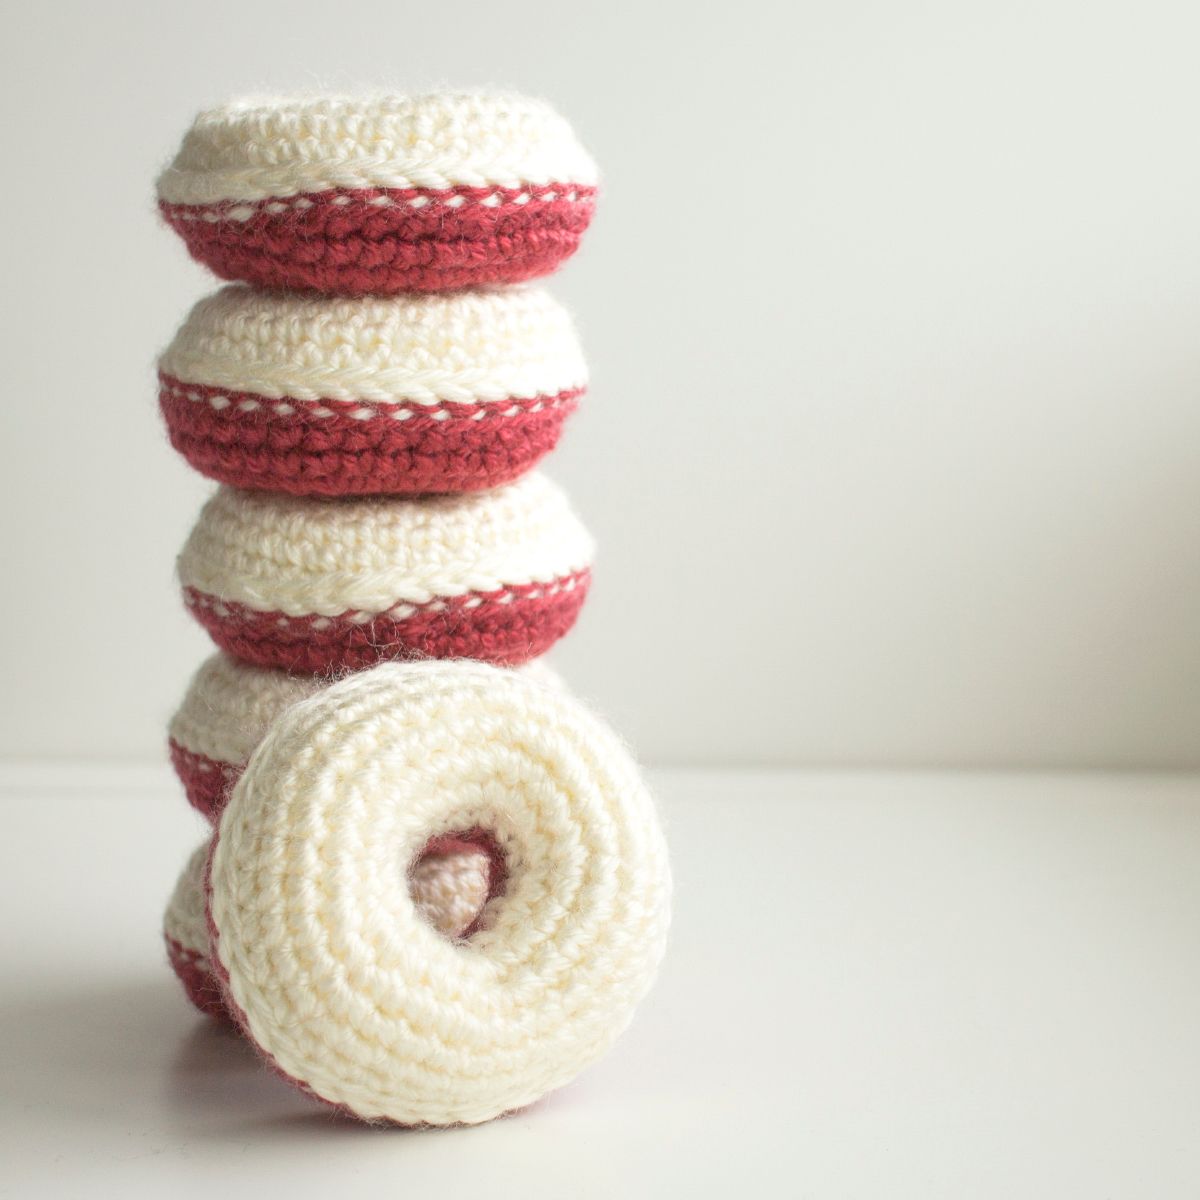 Amigurumi Donuts Free Crochet Pattern